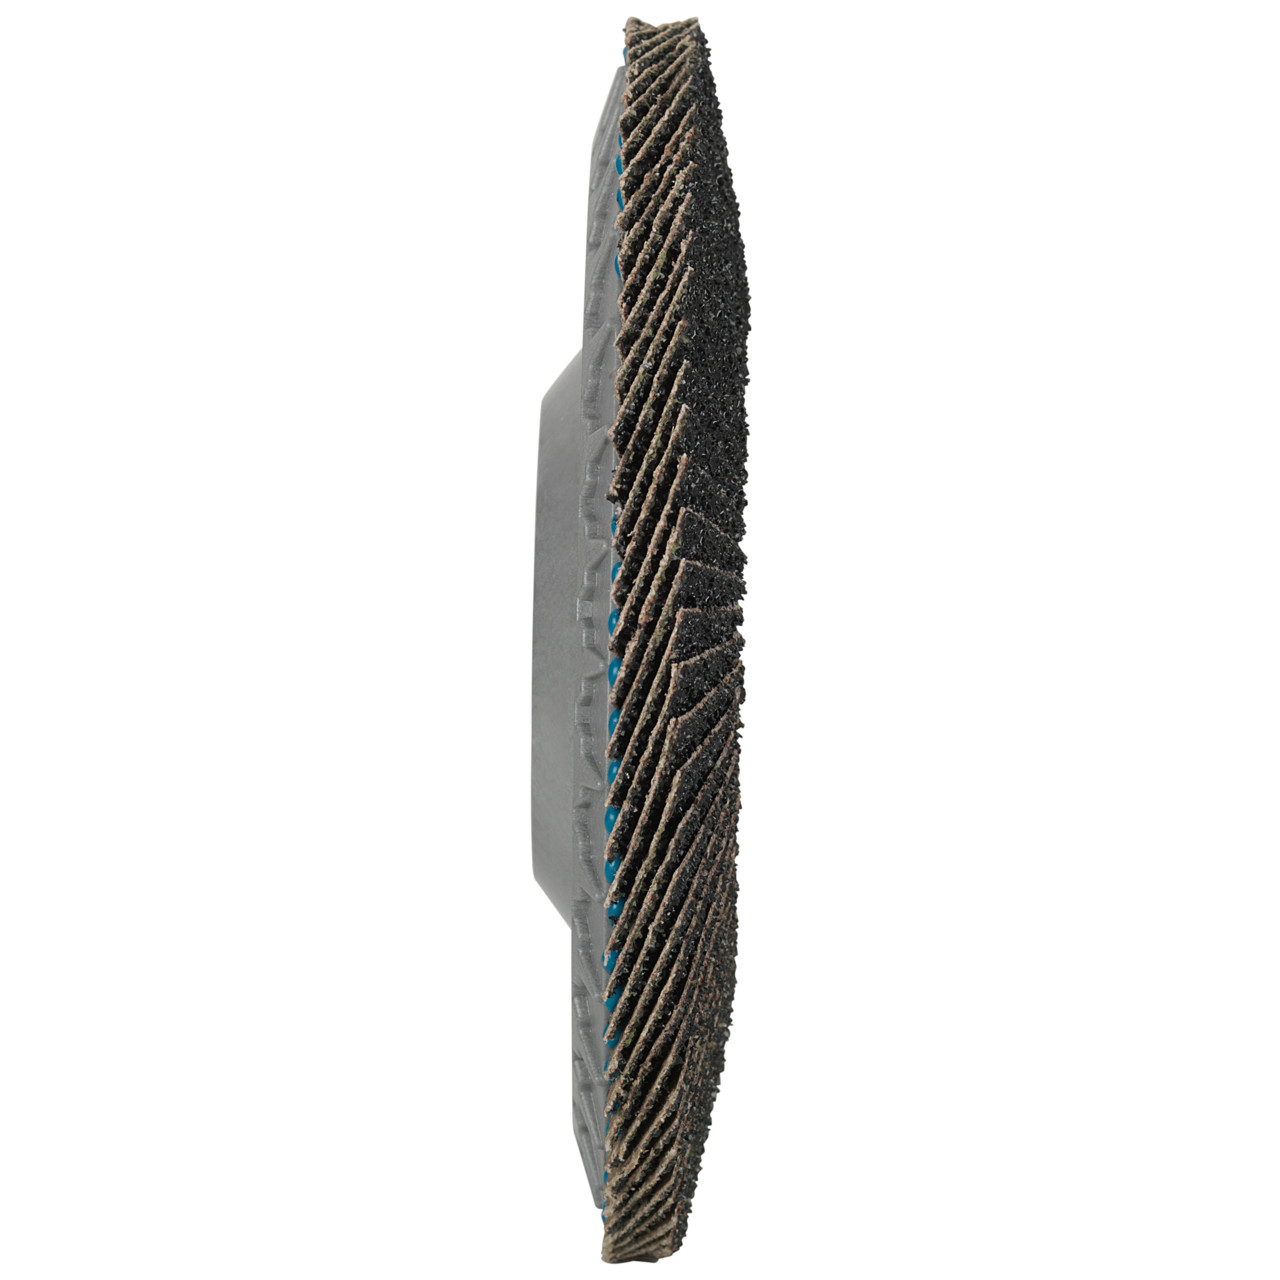 Tyrolit Arandela de seguridad dentada DxH 178x22,23 LONGLIFE C-TRIM para acero y acero inoxidable, P60, forma: 28N - versión recta (cuerpo portador de plástico), Art. 34239200